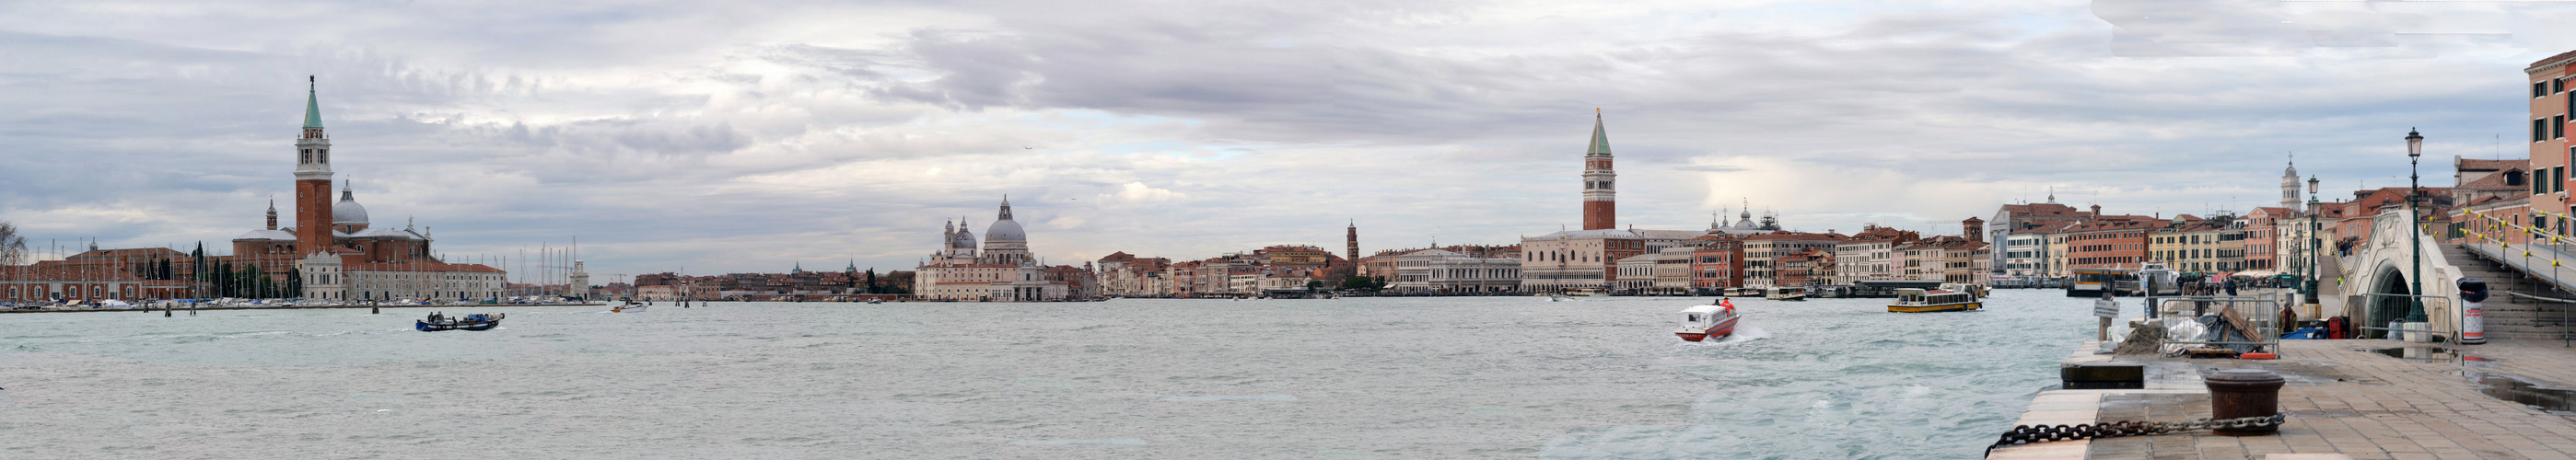 Venice_Panorama